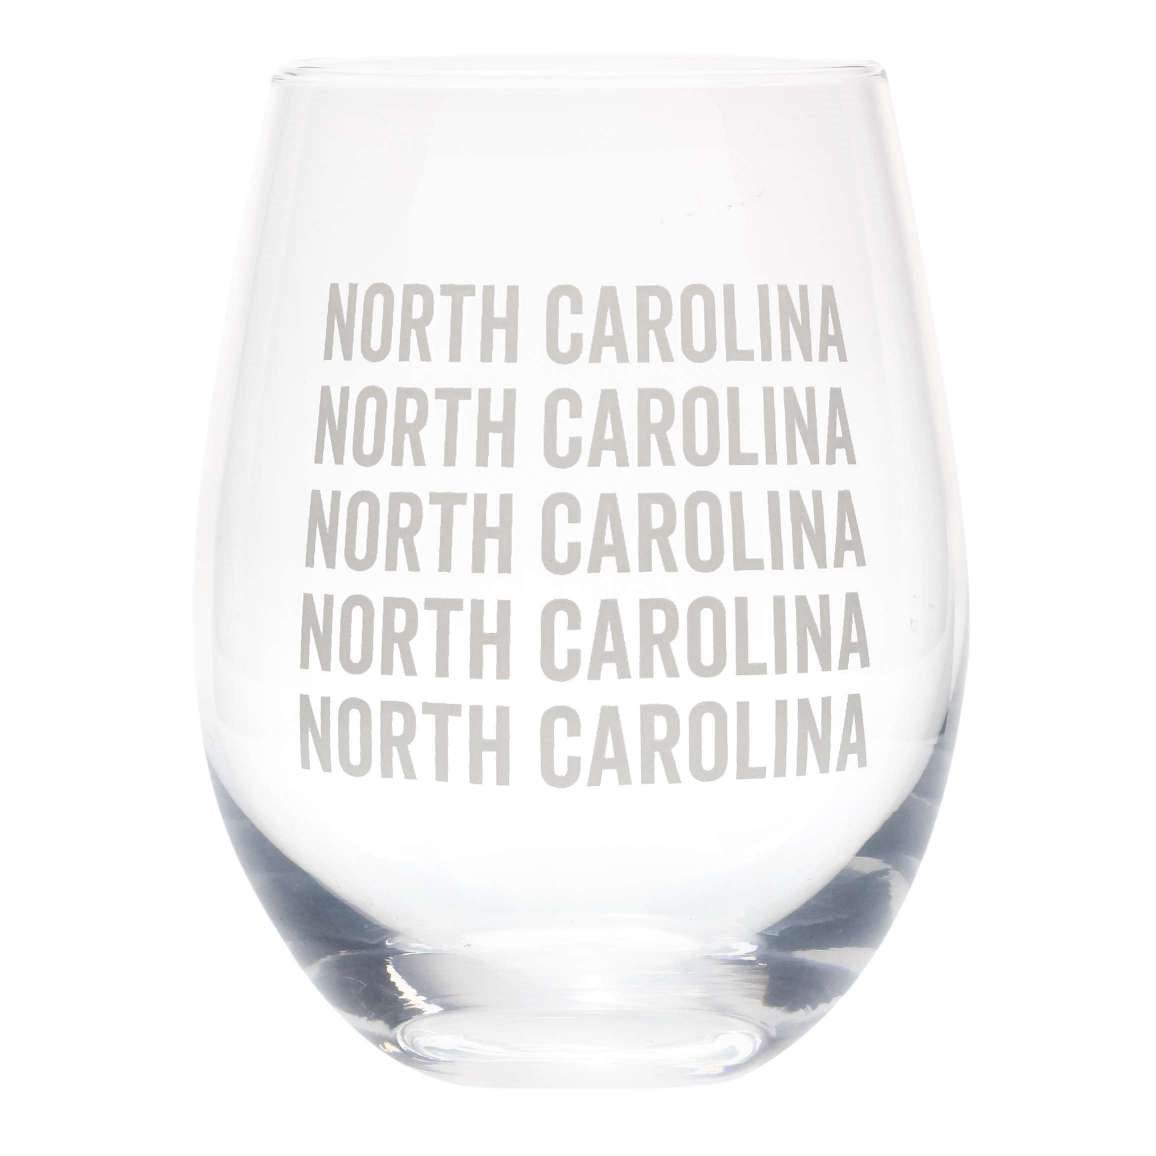 NORTH CAROLINA WINE GLASS